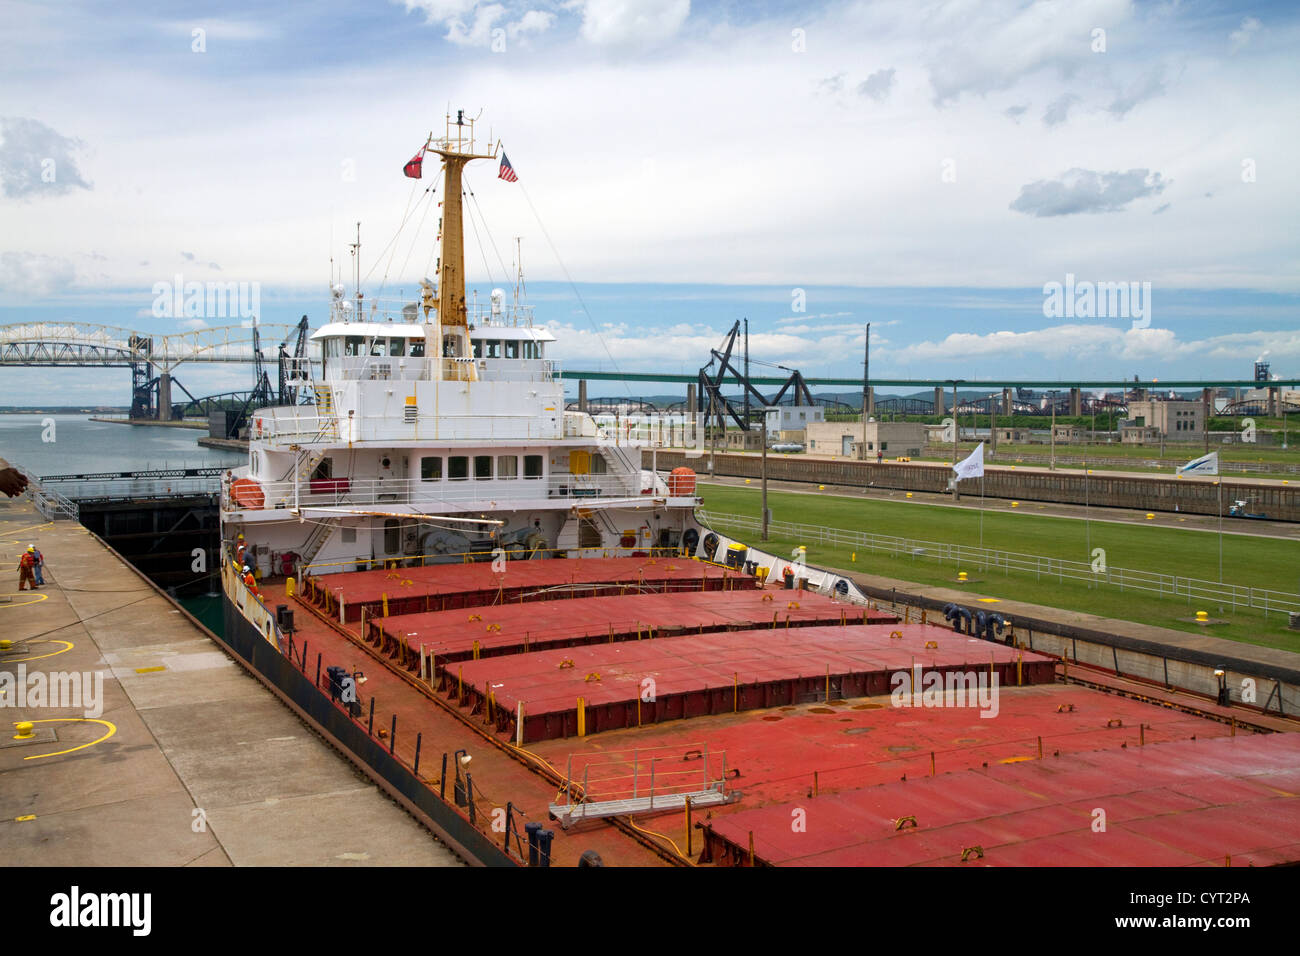 Die Algomarine Masse Transportschiff an so Schleusen in Sault Sainte Marie, Michigan, USA. Stockfoto